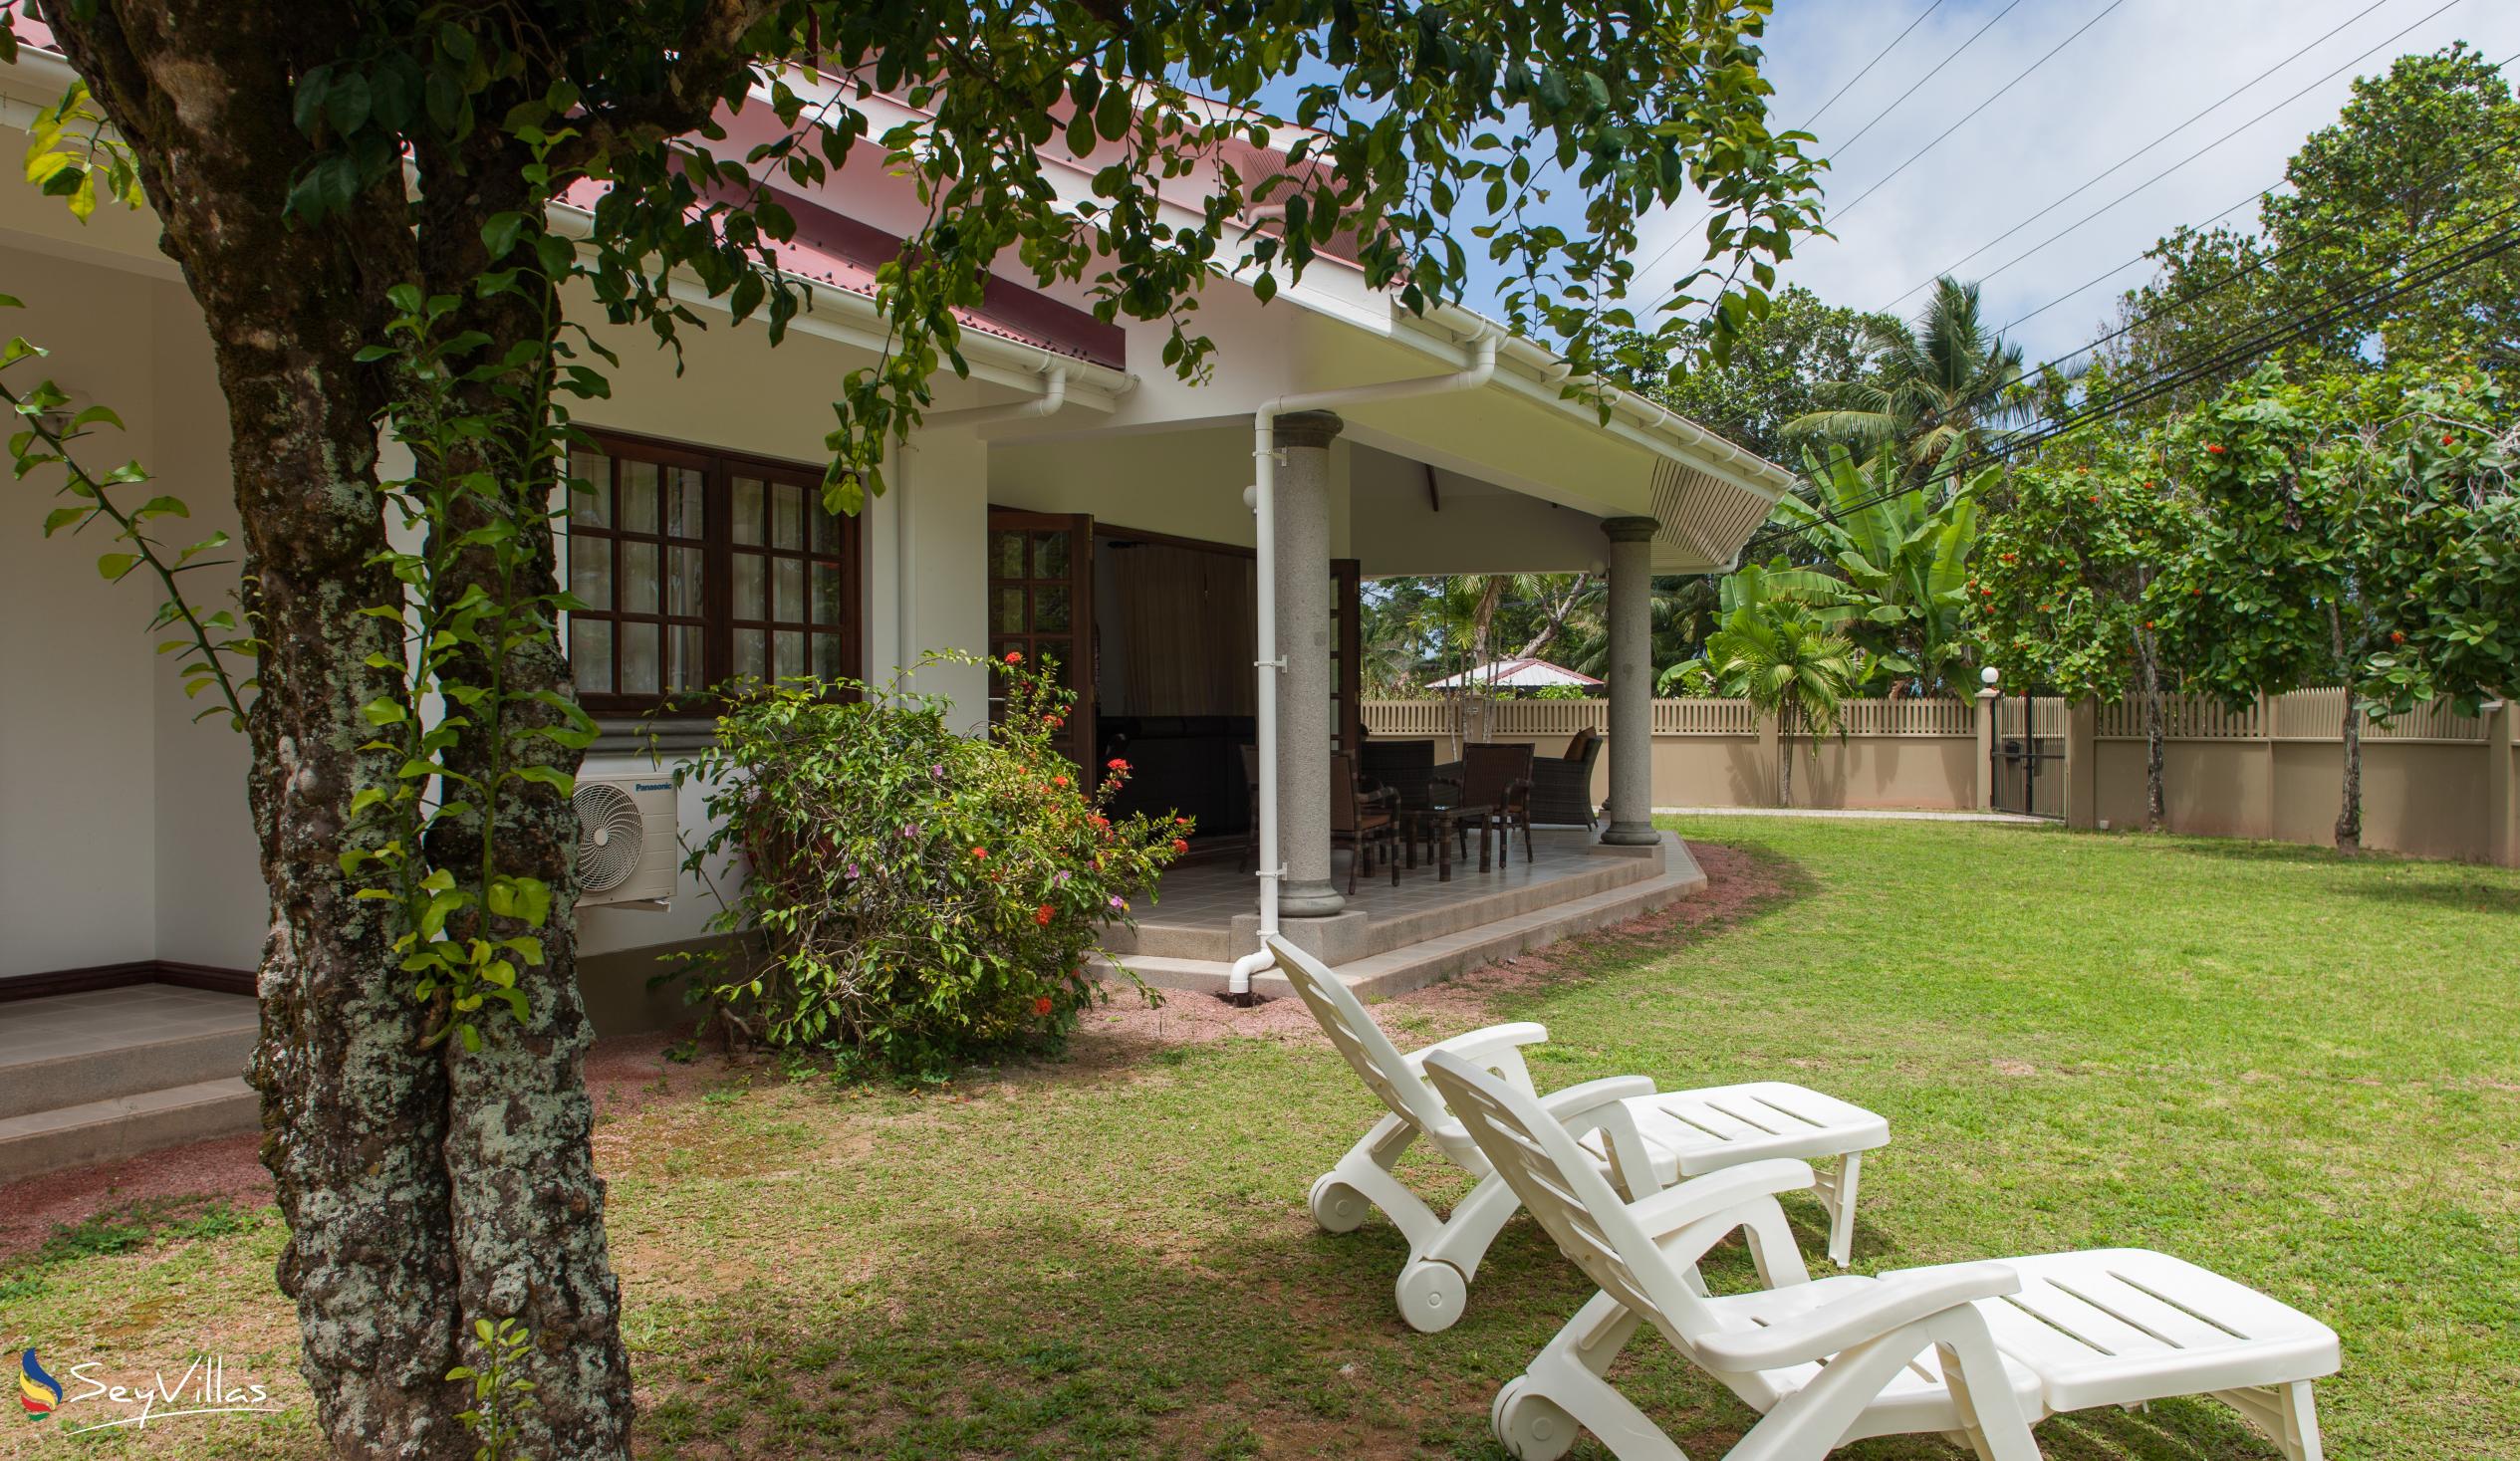 Foto 8: Villa Saint Sauveur - Aussenbereich - Praslin (Seychellen)